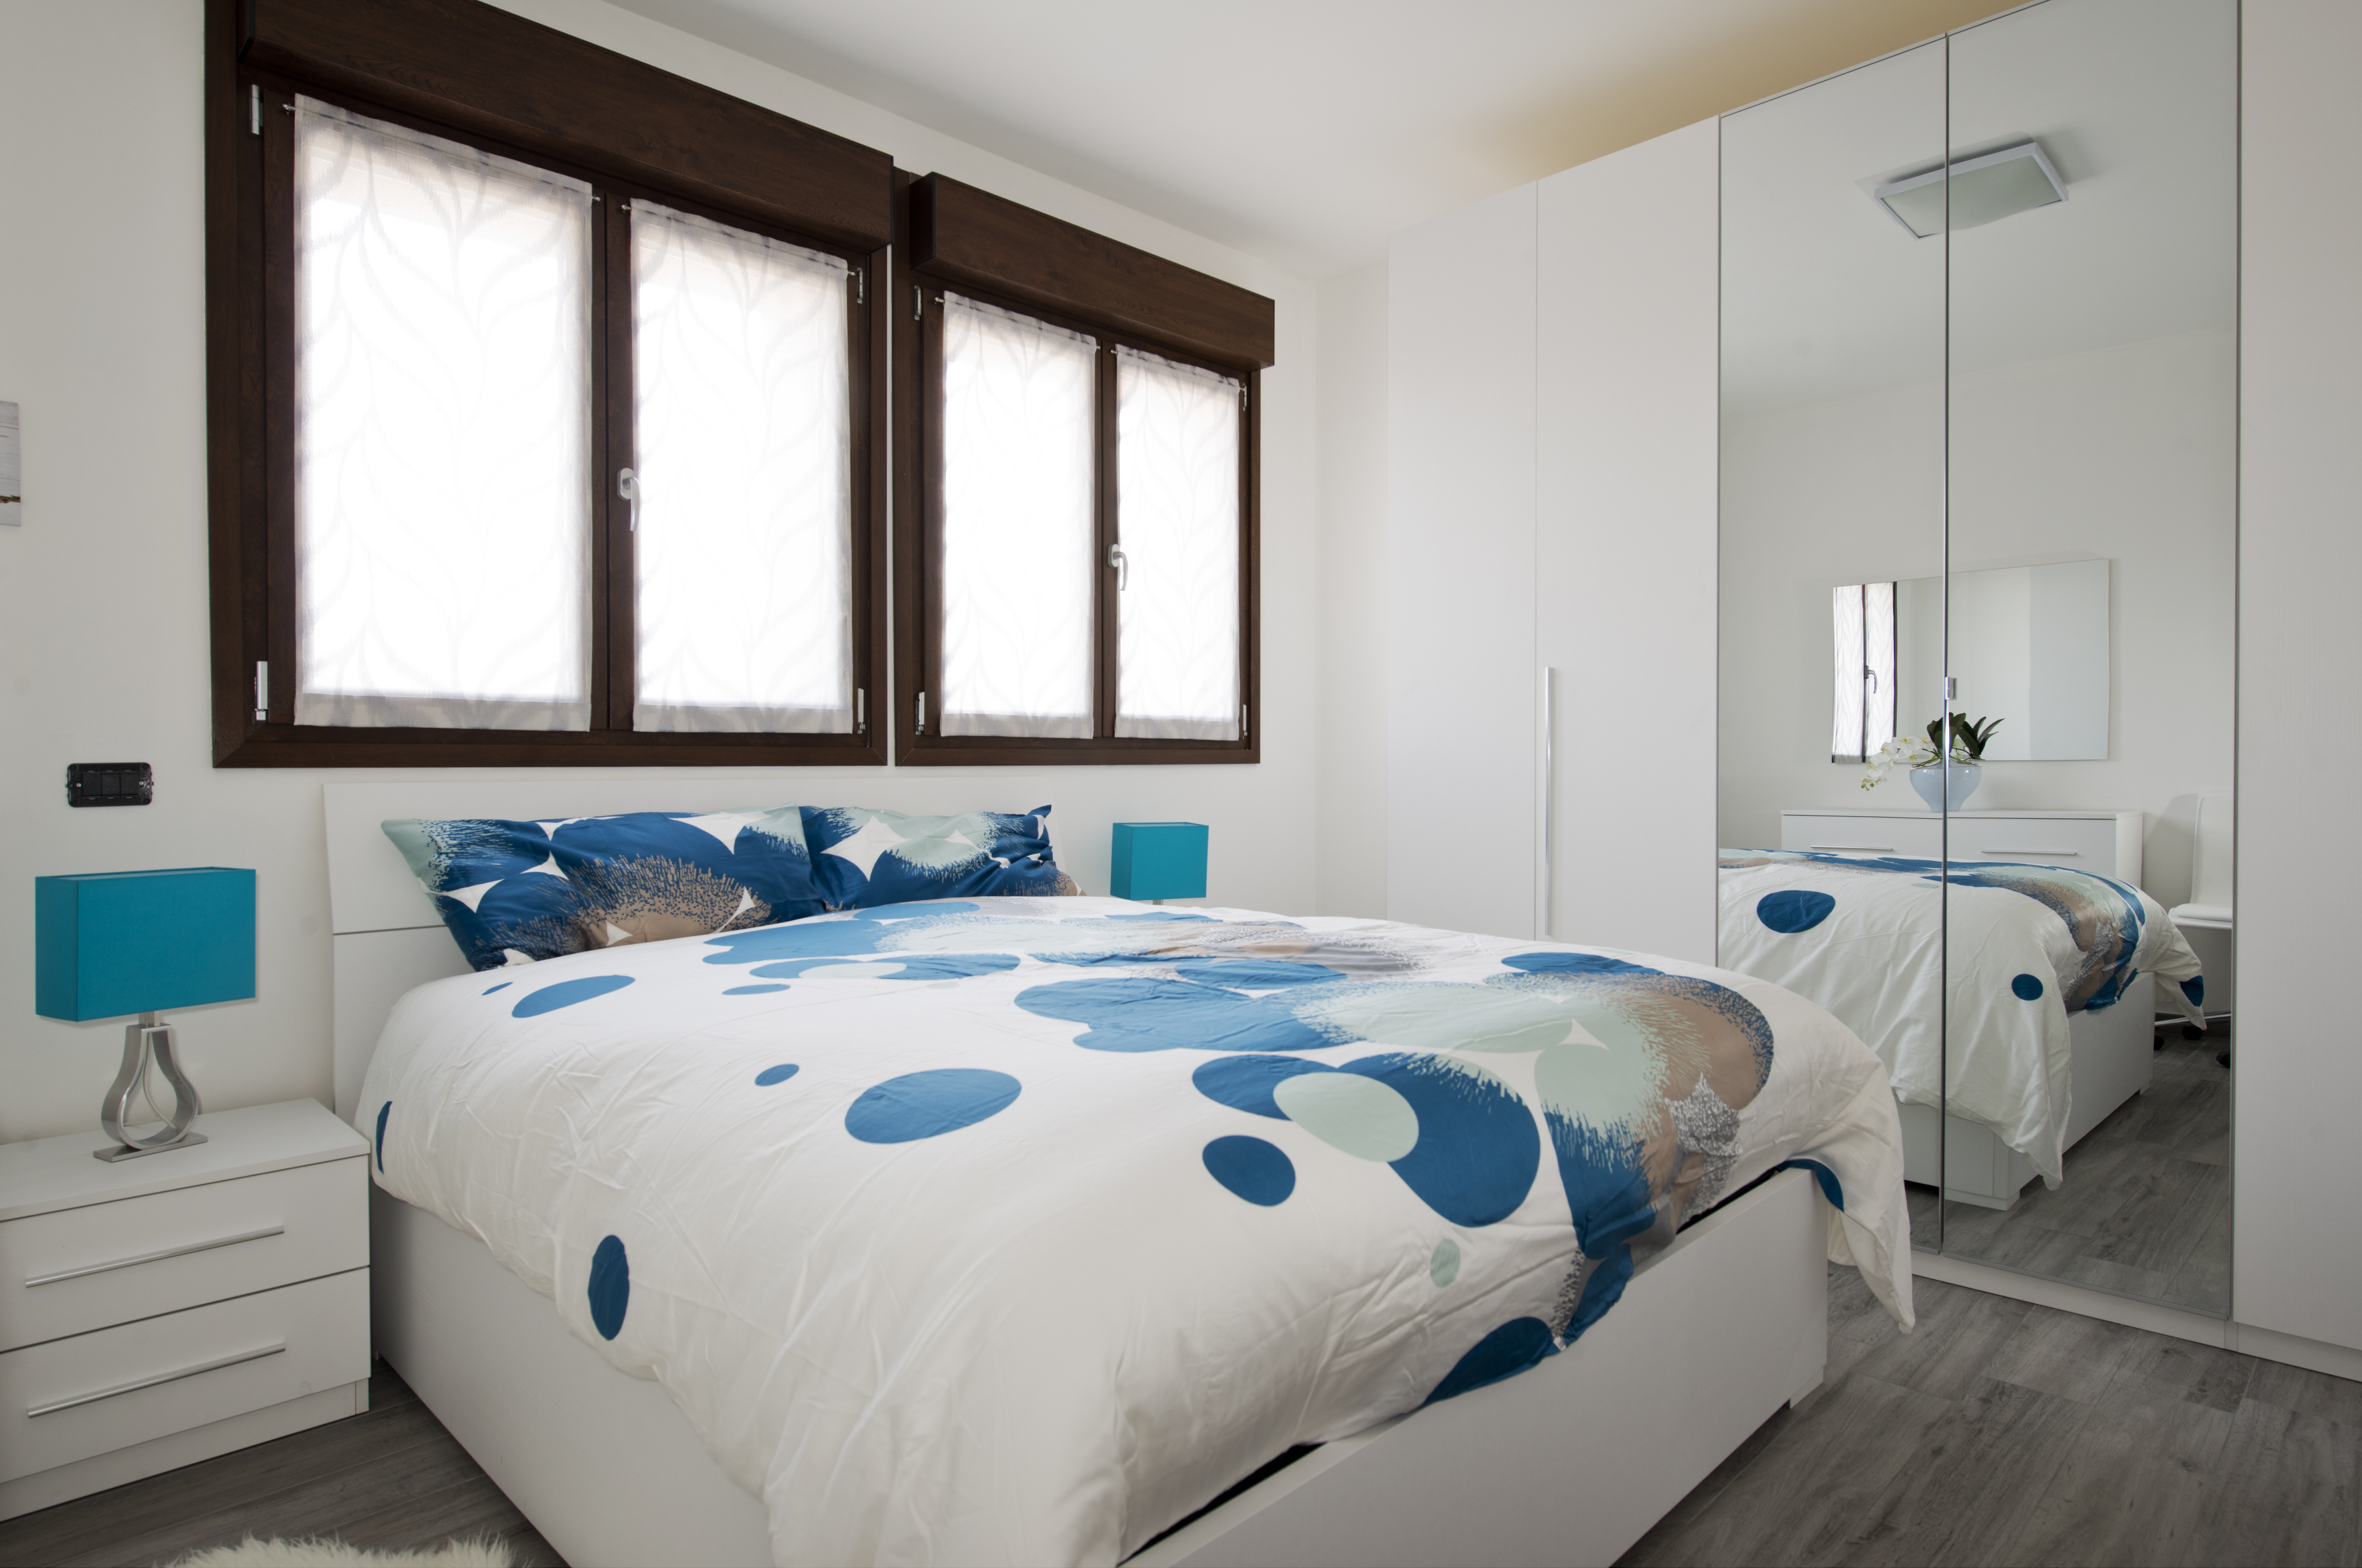 New Appartamento 4 stanze e 4 bagni - Appartamenti in affitto a Milano,  Lombardia, Italia - Airbnb